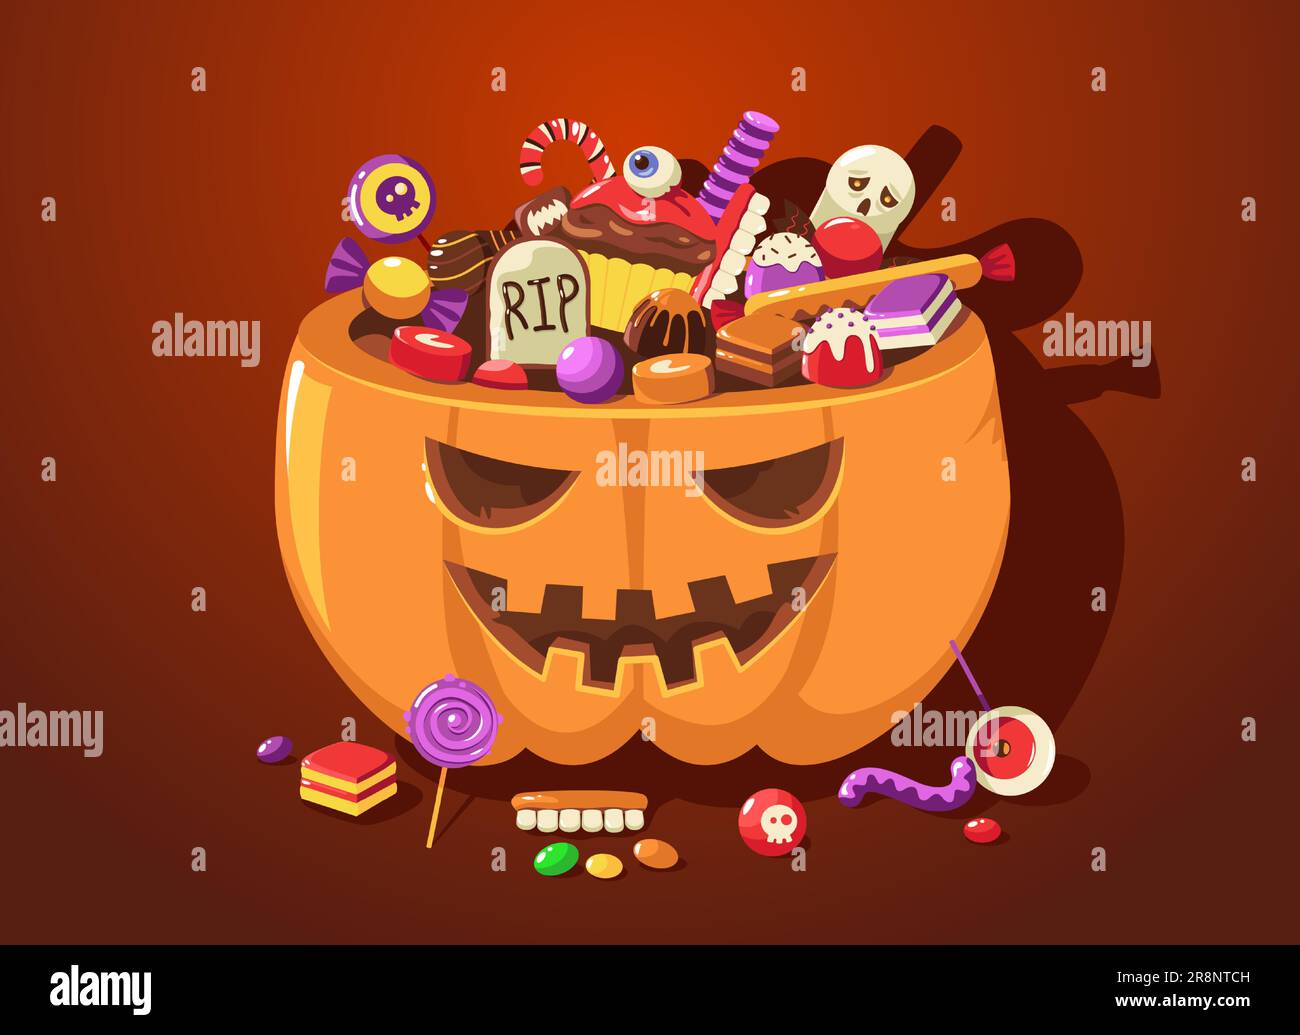 Halloween-Kürbis mit Süßigkeiten. Cartoon niedlicher, gruseliger Korb voller Süßigkeiten für Kinder zum Festivalfest im Oktober. Vektordarstellung. C Stock Vektor